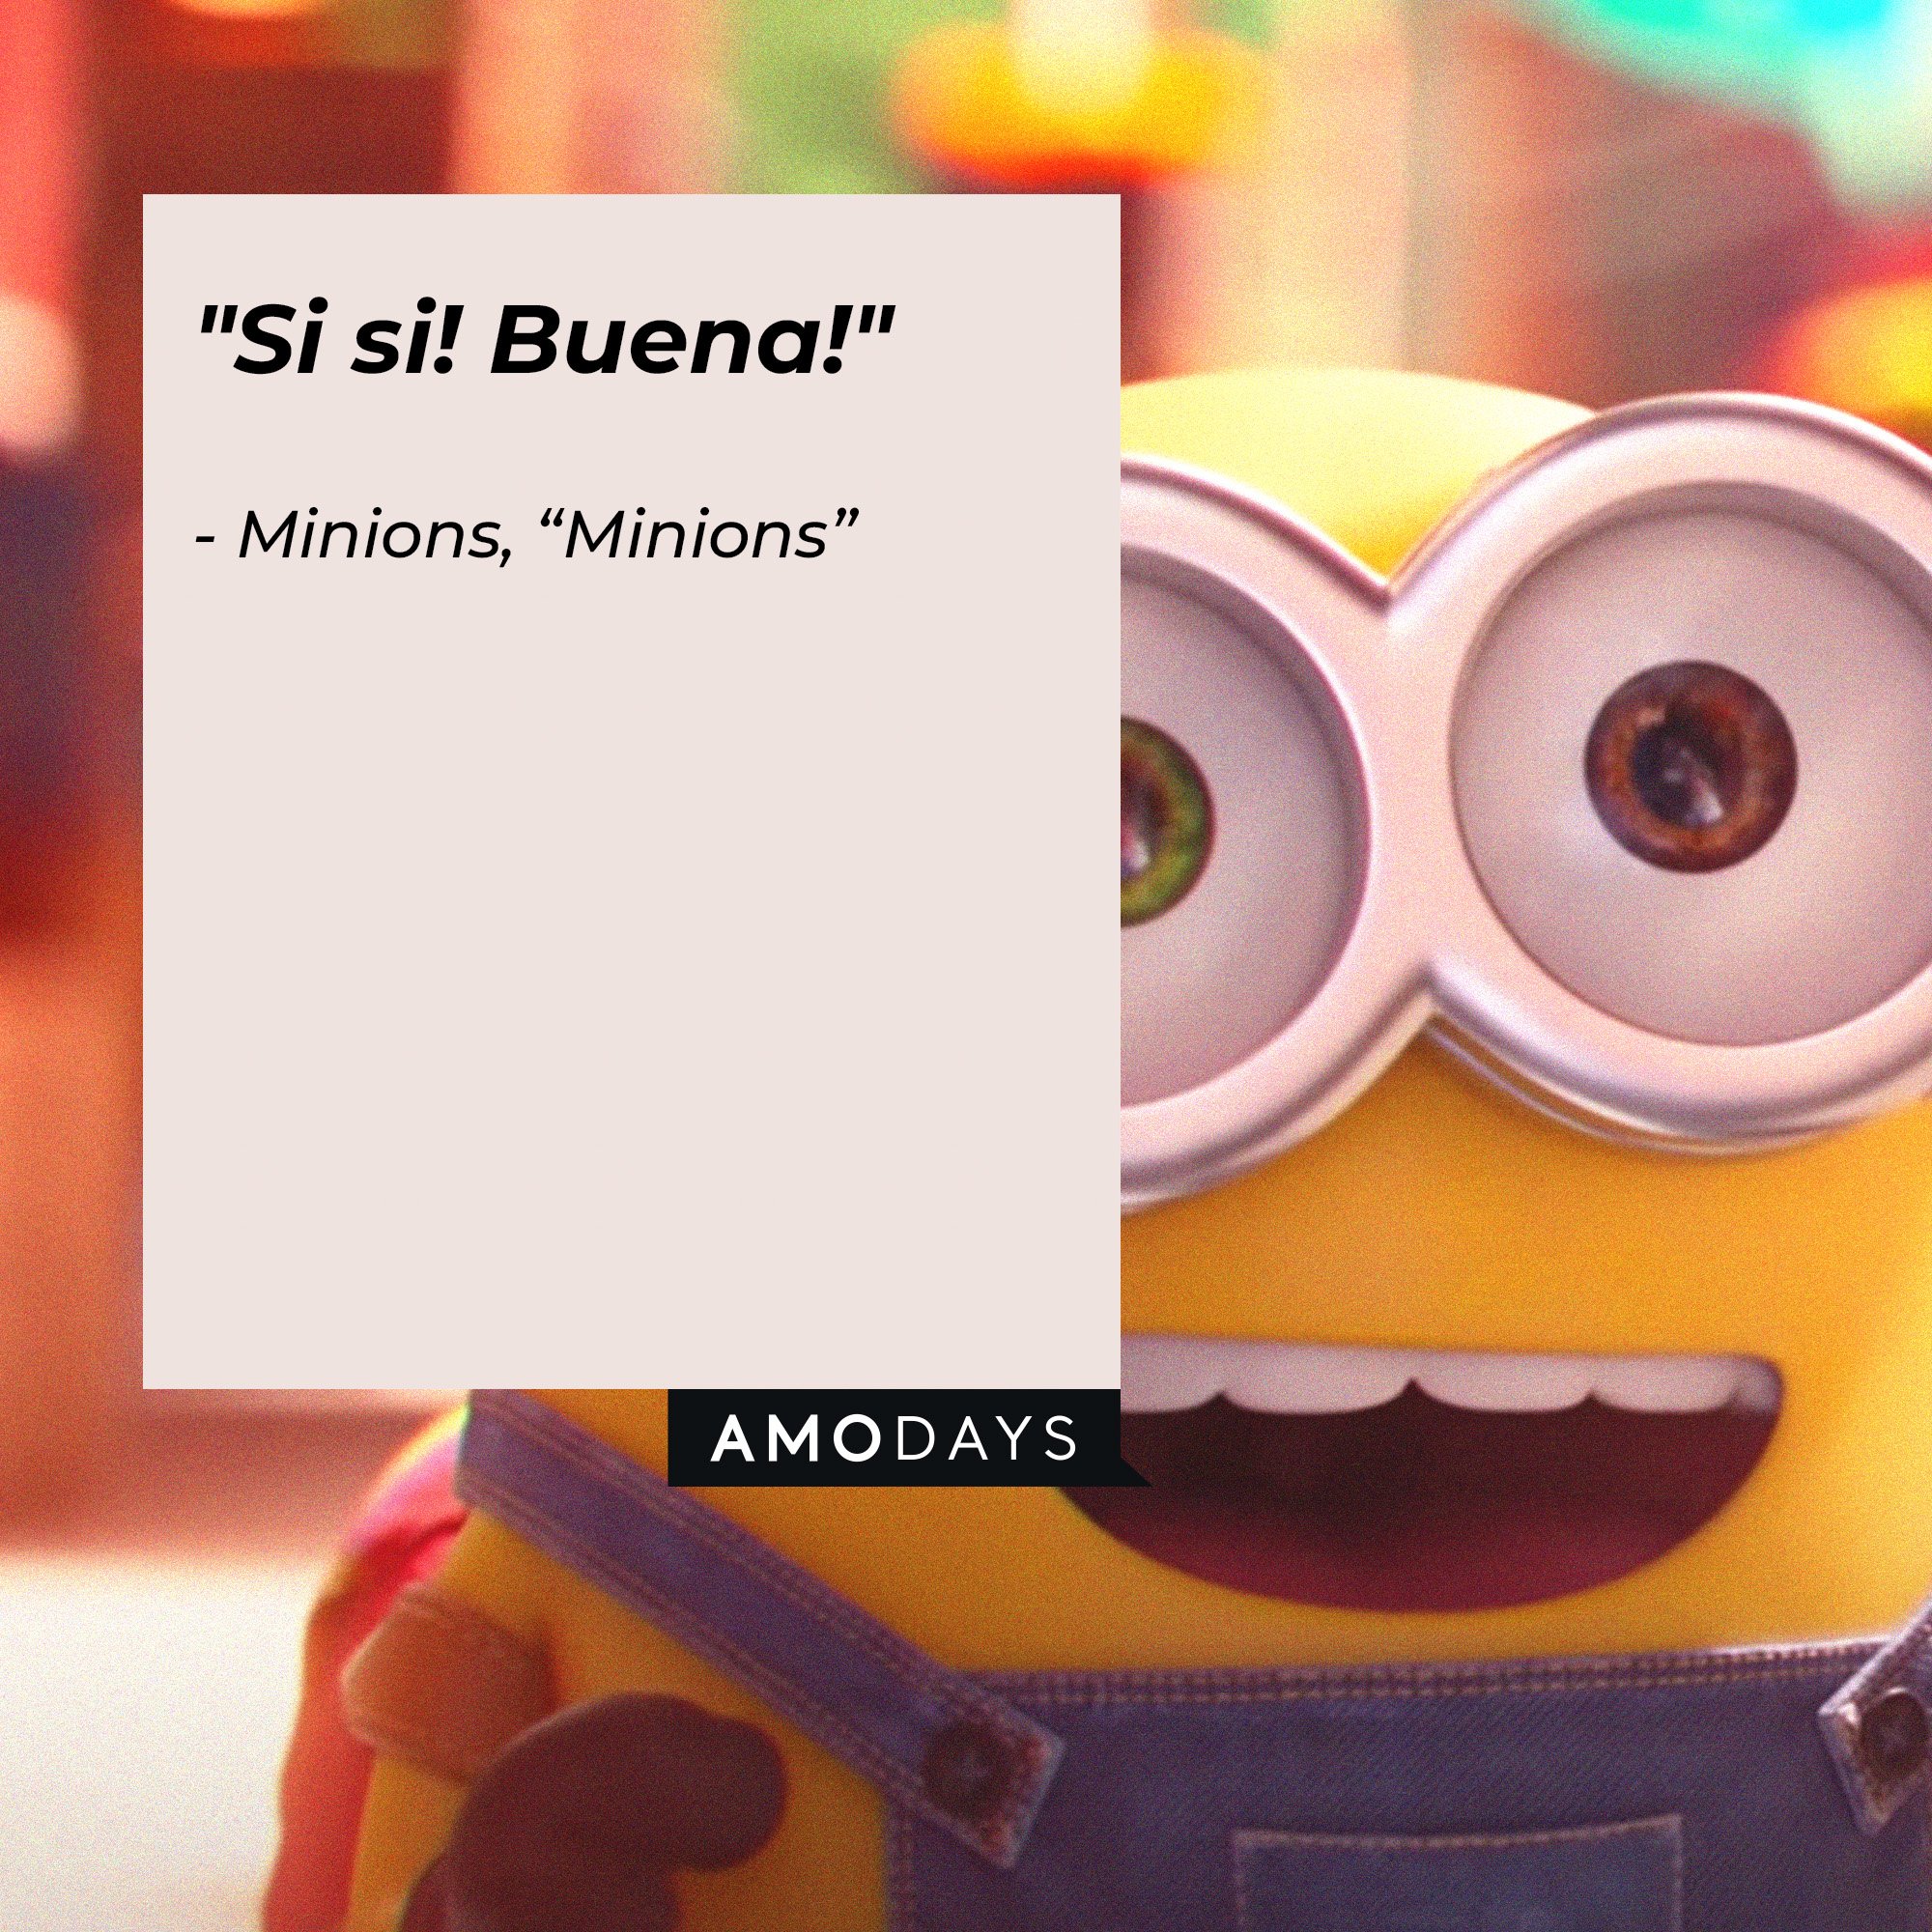  Minions' quote: "Si si! Buena!" | Image: AmoDays